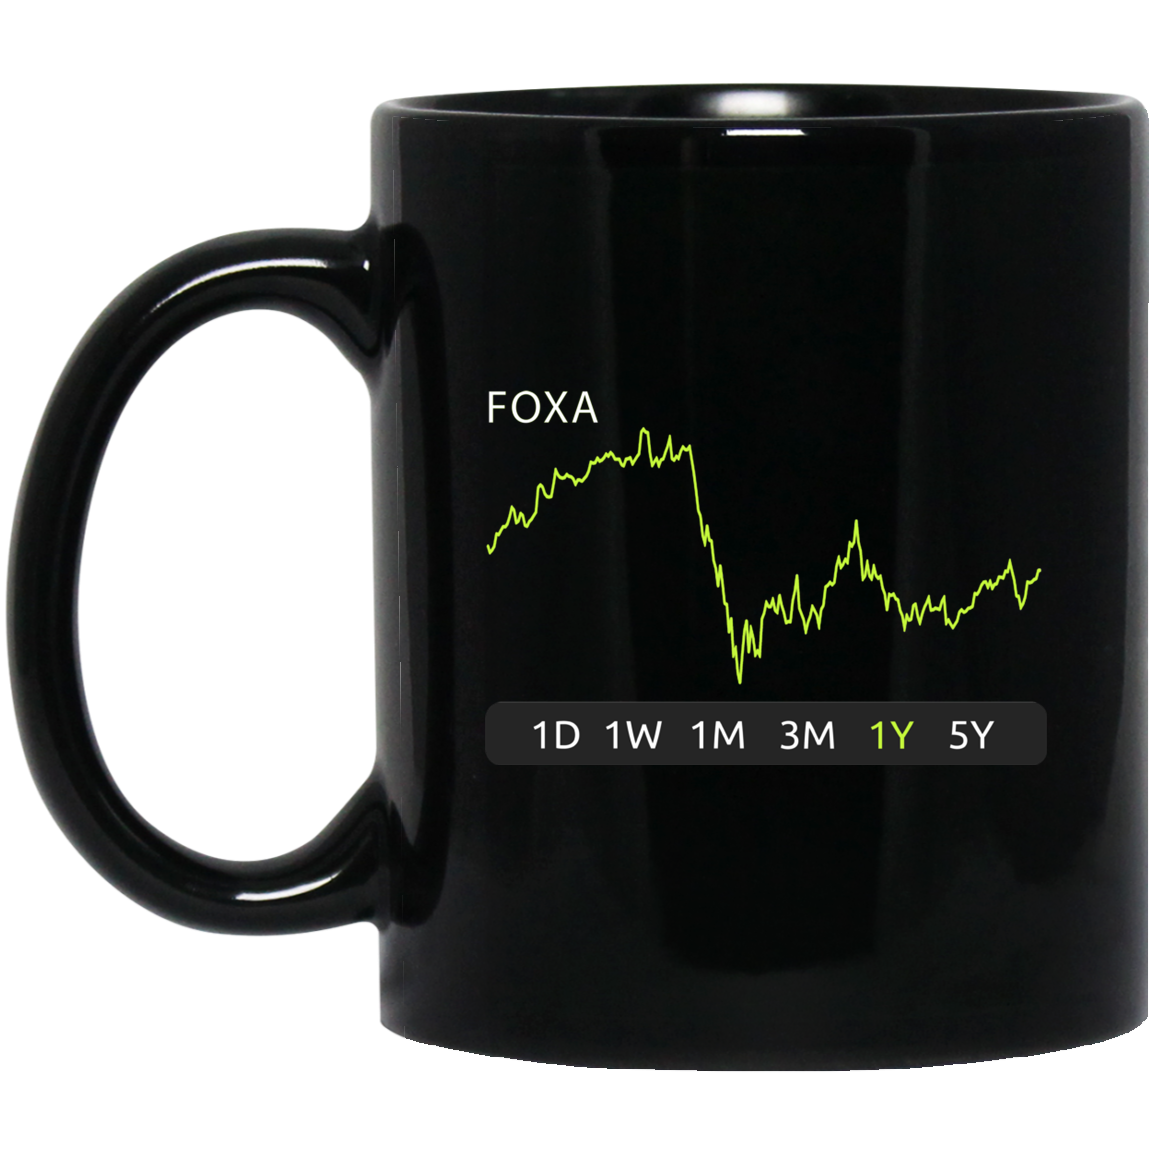 FOXA Stock 1y Mug